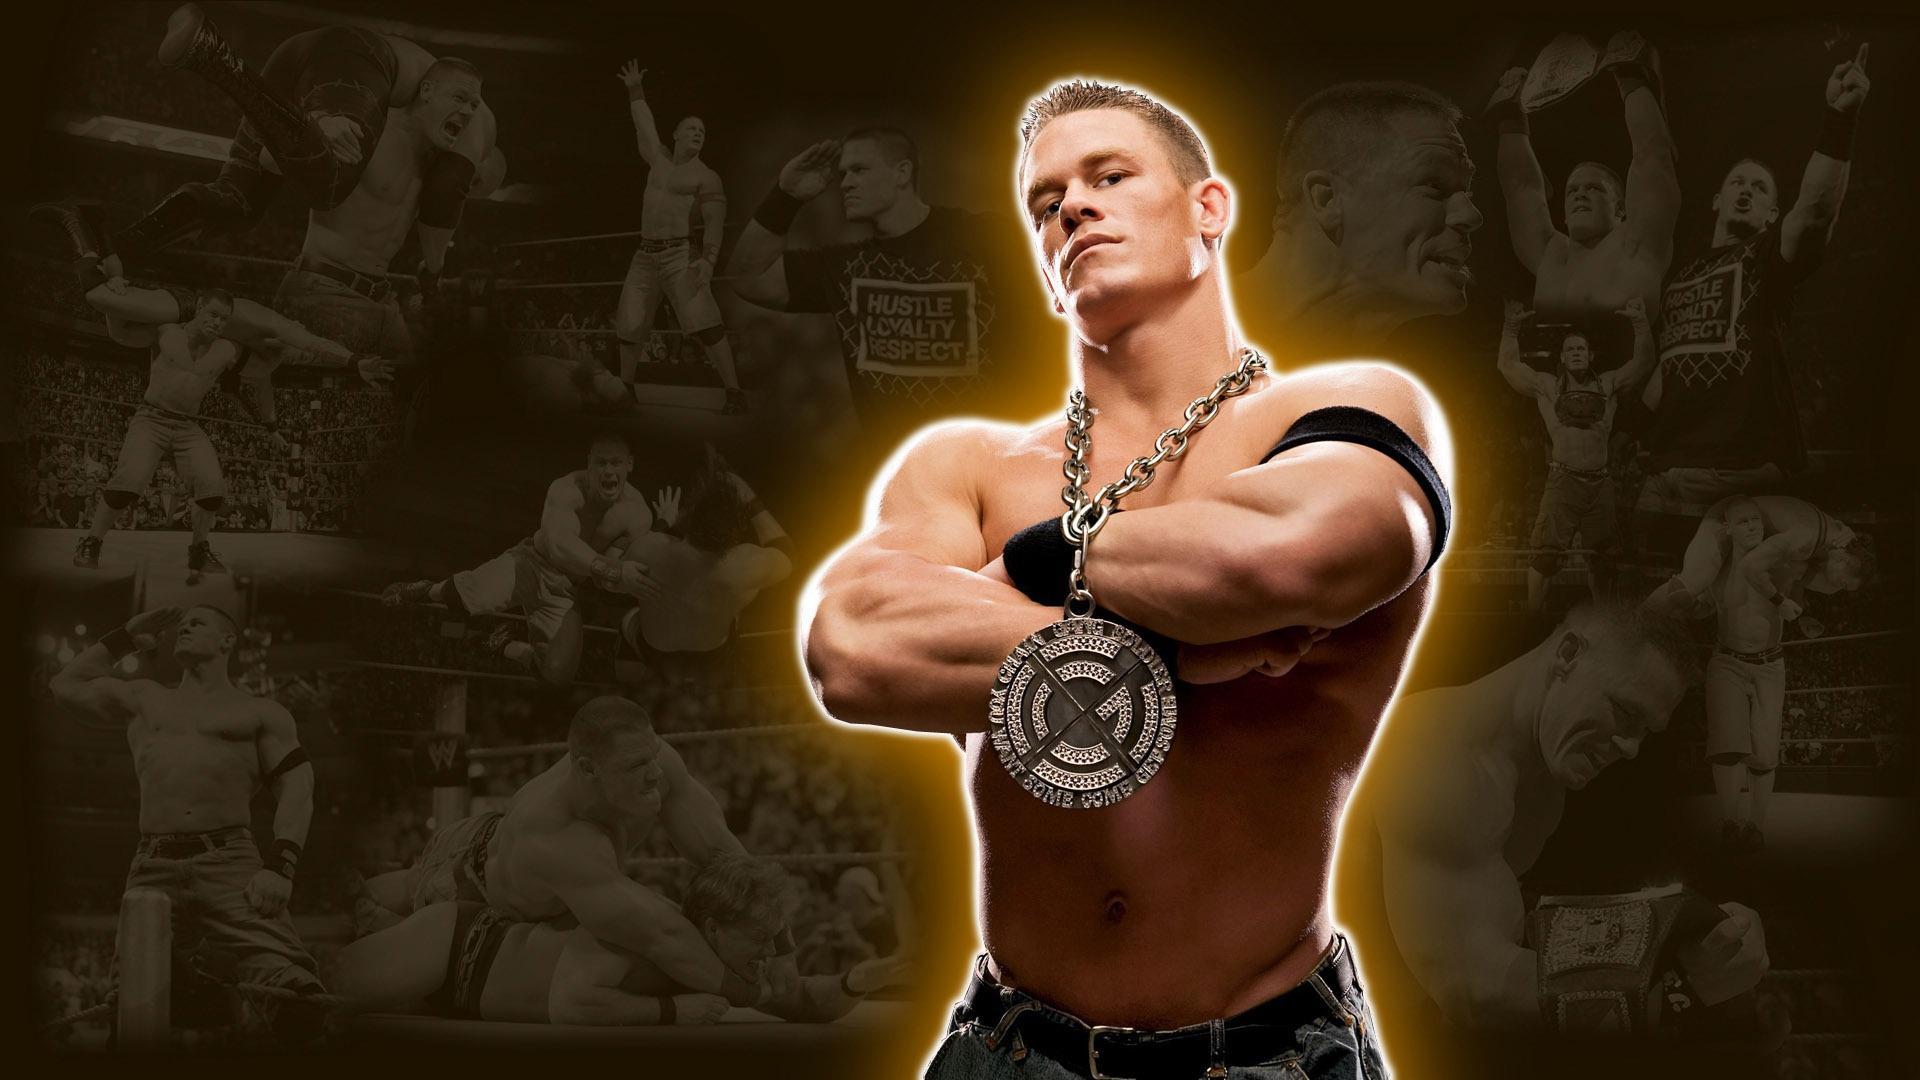 Muscular John Cena HD desktop wallpaper, Widescreen, High